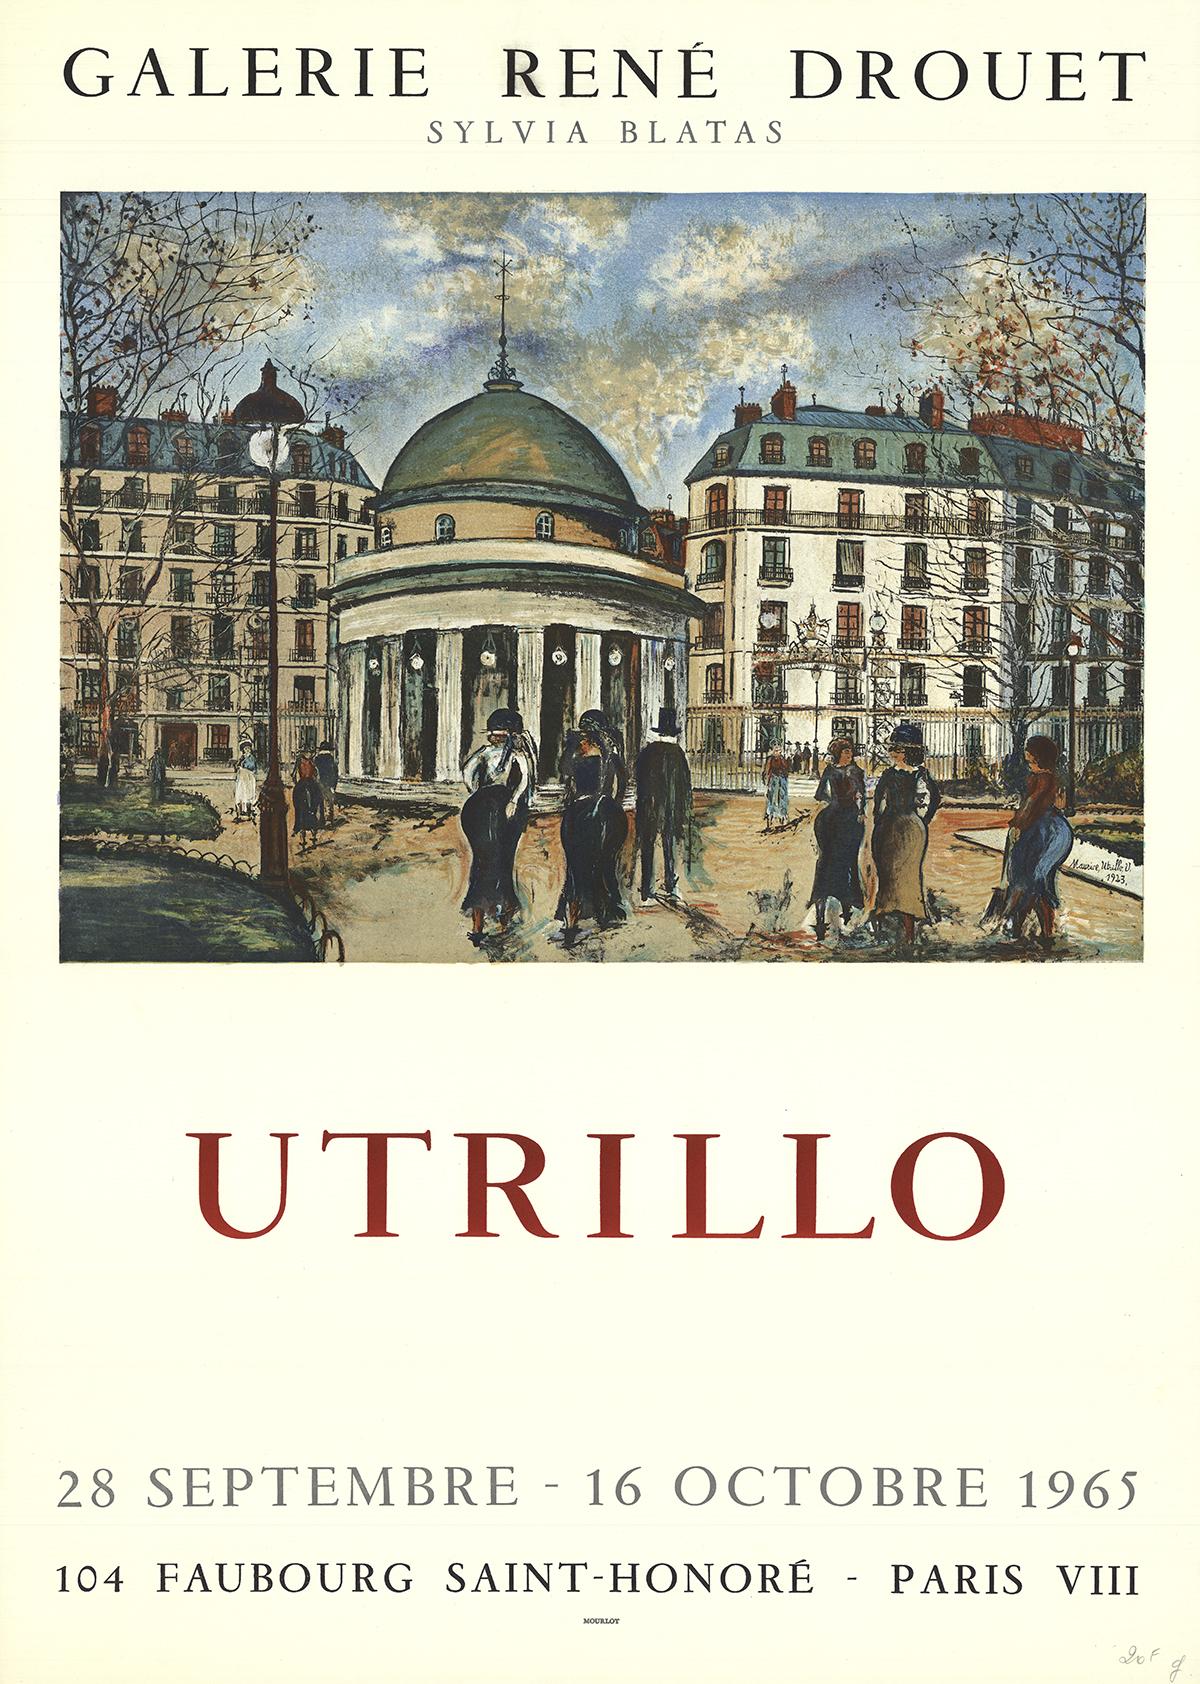 Affiche pour une exposition d'Utrillo qui s'est tenue à la Galerie René Drouet de septembre à octobre 1965.
